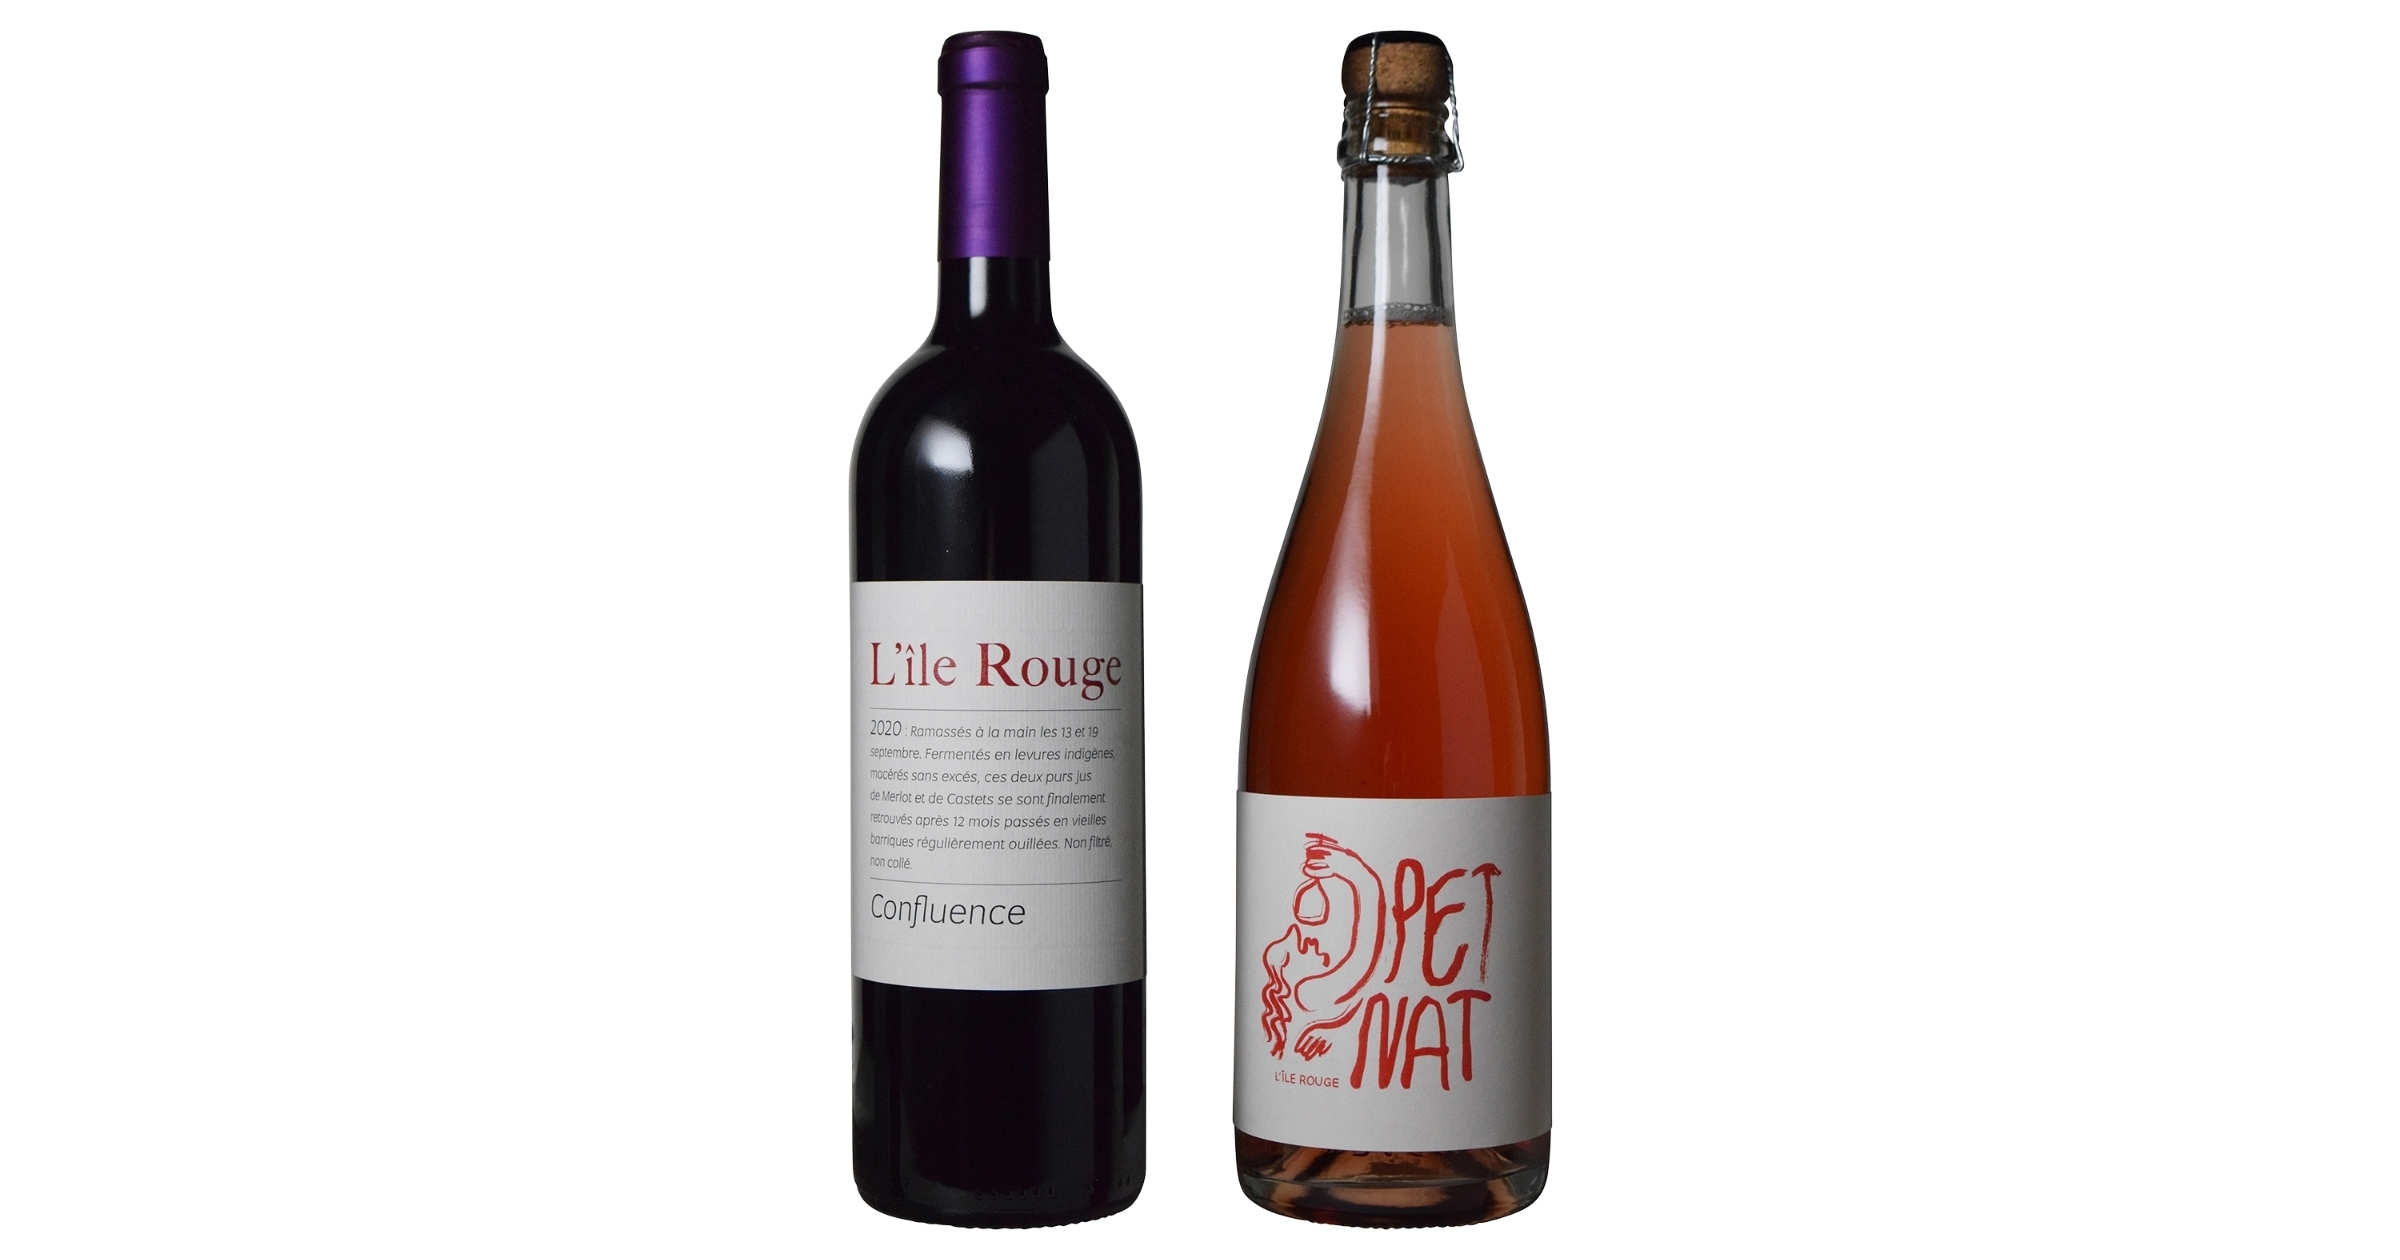 製造する全てのワインにおいてヴァン・メトド・ナチュールの認証を取得しているボルドー地方のマイクロワイナリー「ドメーヌ・ド・リル・ルージュ」取り扱い開始